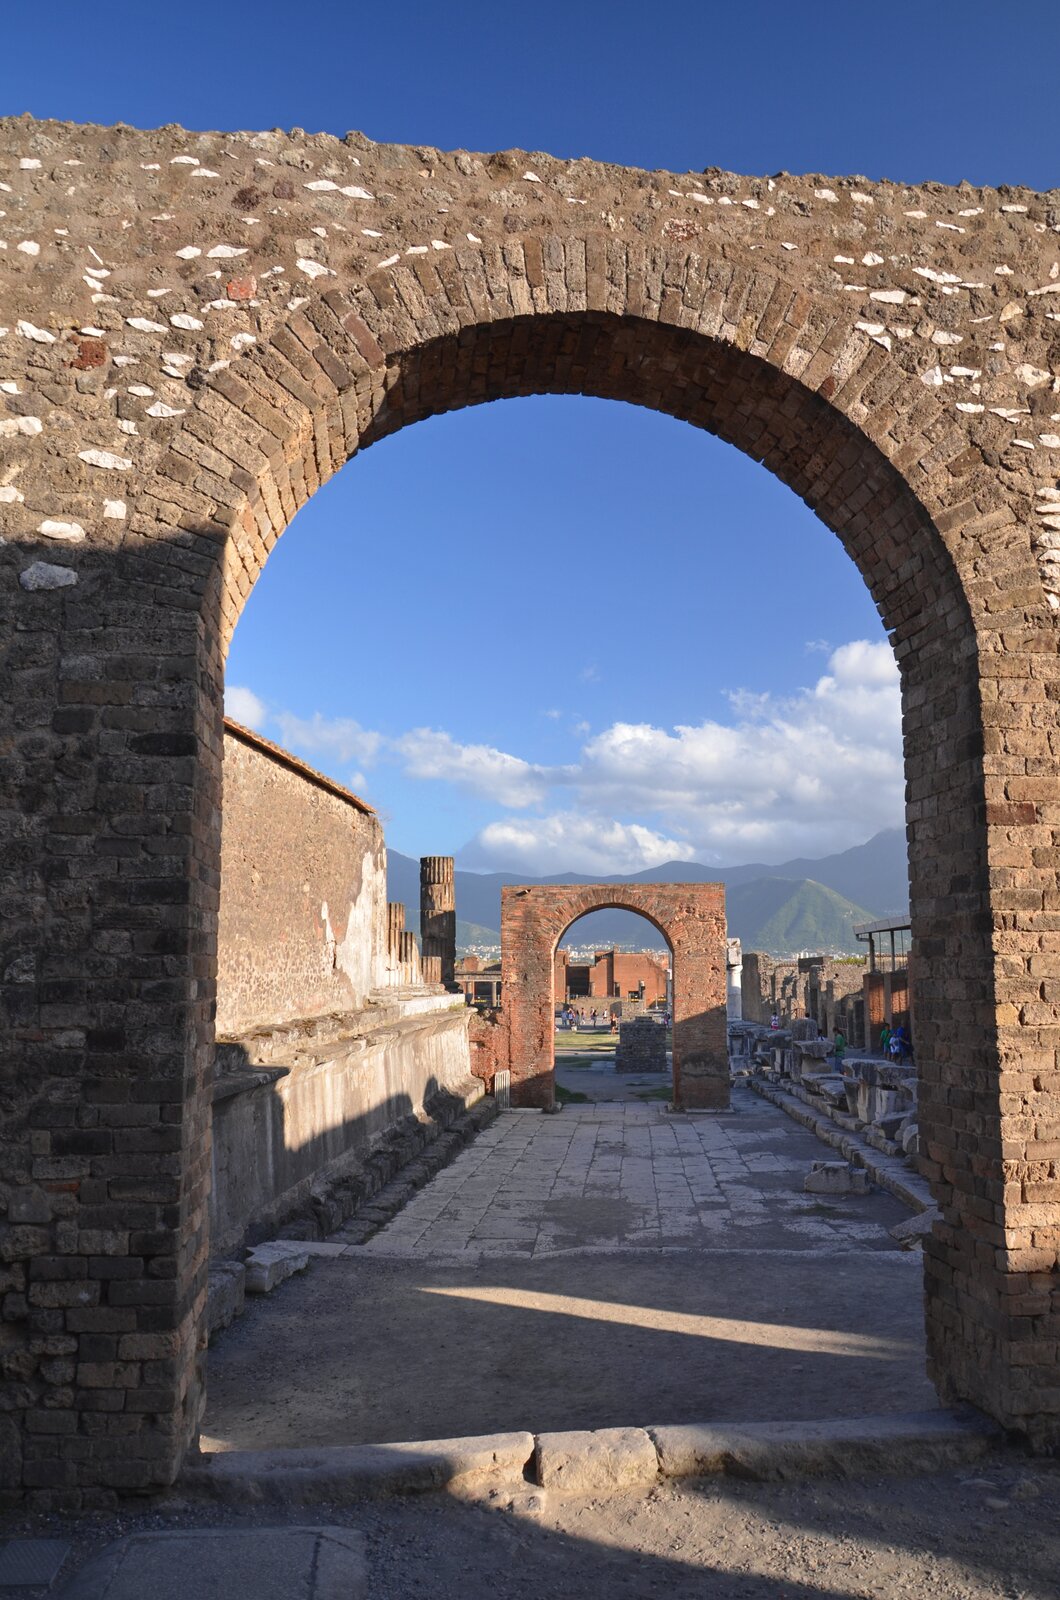 Ilustracja przedstawia widok na ruiny miasta Pompeje. Na zdjęciu znajdują się kamienne łuki i ściany budynków. Pomiędzy ramionami łuków widoczna jest kamienna droga. W tle widoczne są góry.